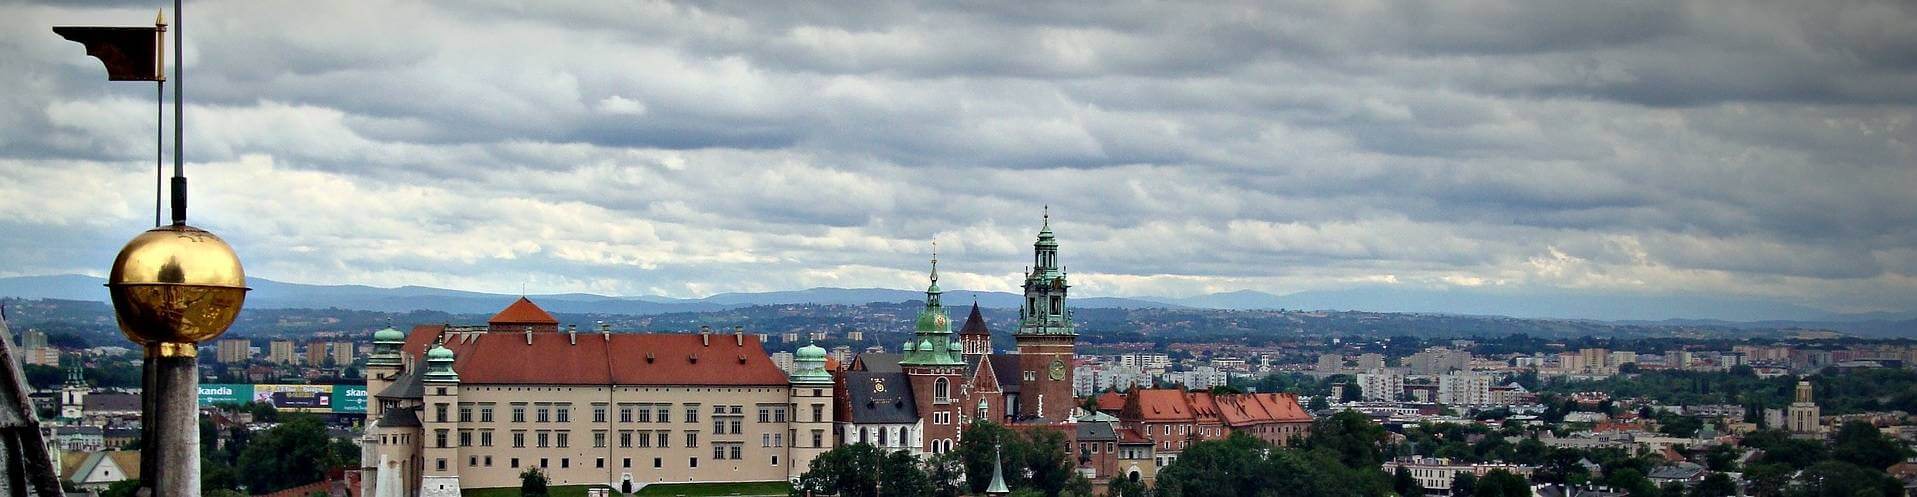 Kraków - dawna stolica Polski - widok z Wieży Mariackiej